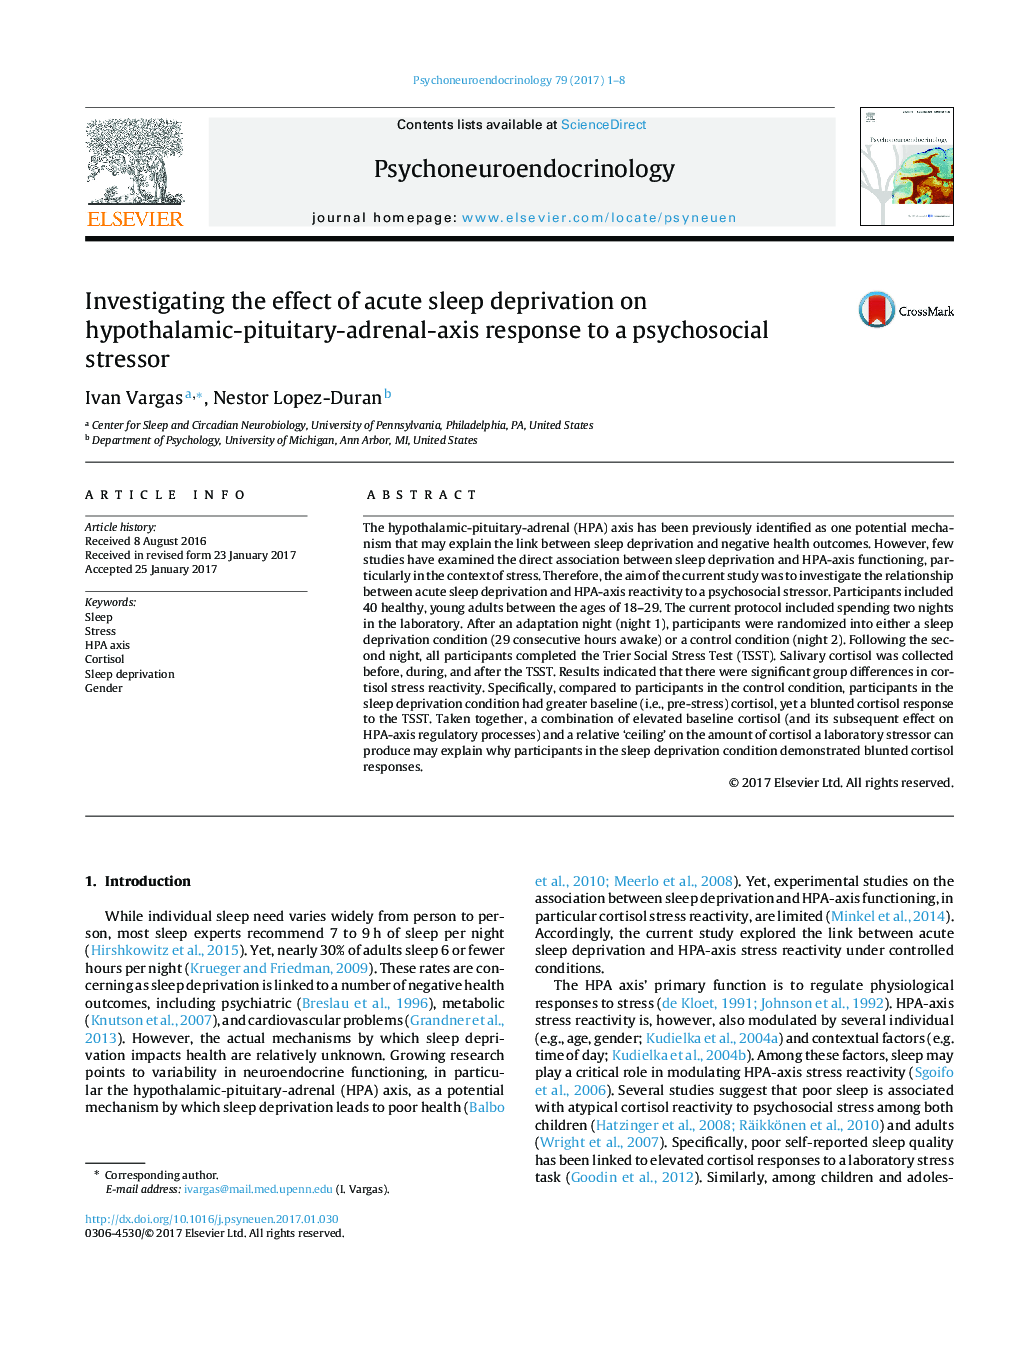 بررسی اثر محرومیت حاد بر پاسخ هیپوتالاموس-هیپوفیز-آدرنال به یک استرس روانشناختی 